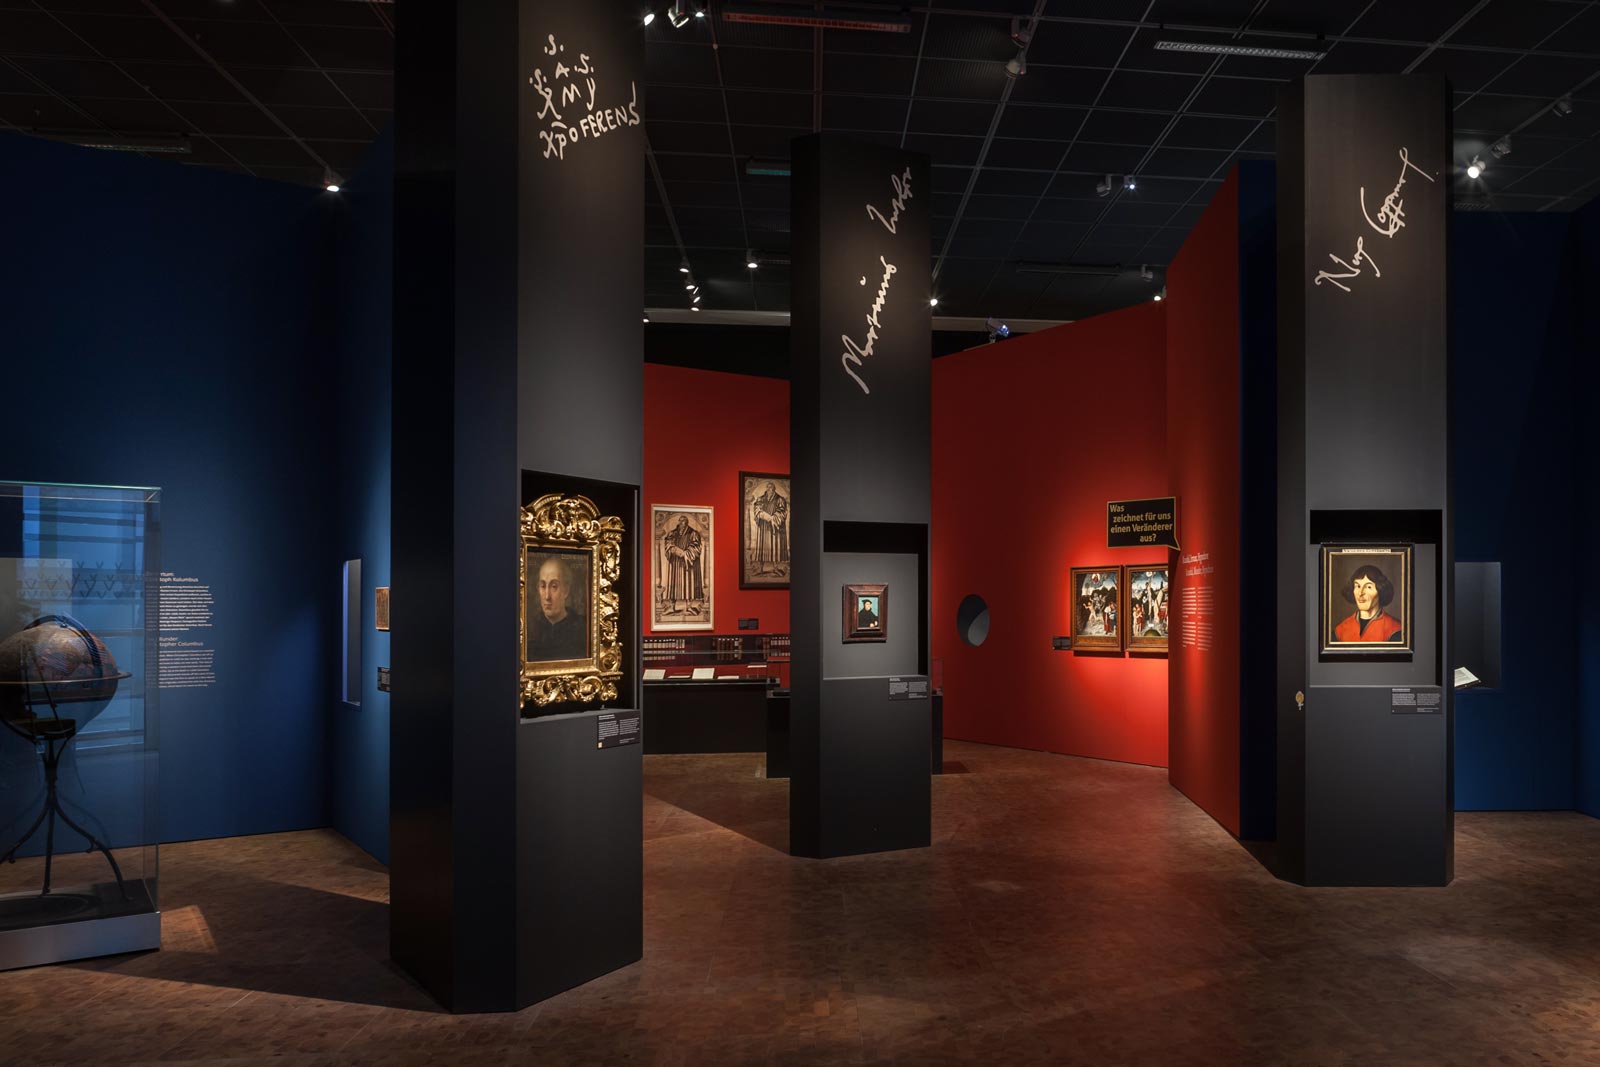 Das Referenzbild für Ausstellungsgestaltung aus der Sonderausstellung Luther, Kolumbus und die Folgen zeigt eine Szenografie mit Exponatpräsentation.